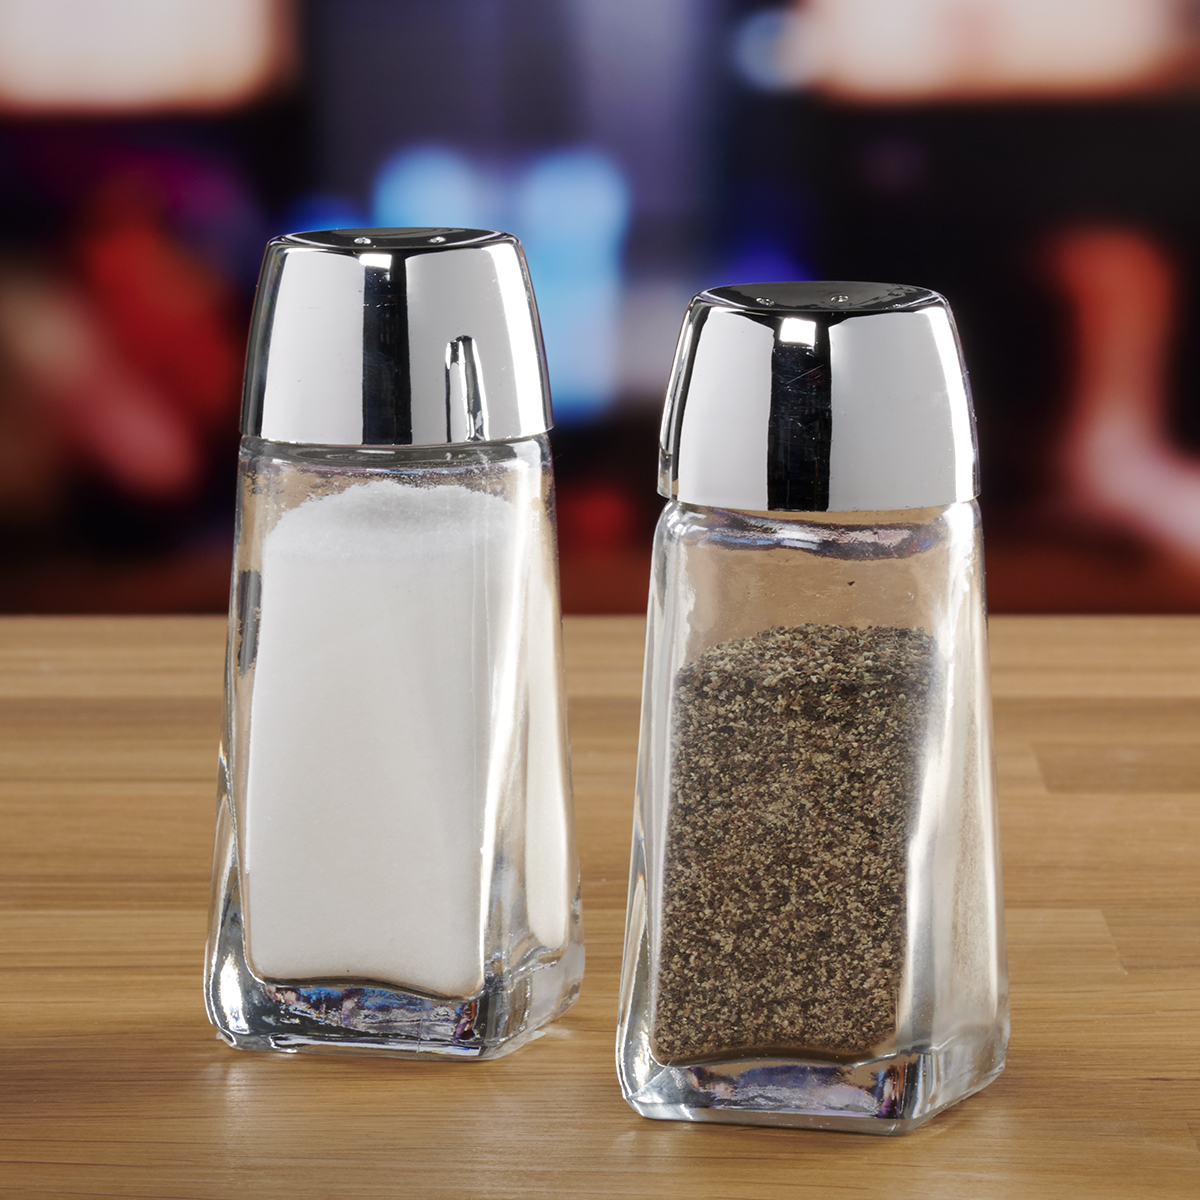 Salt + Pepper Shaker